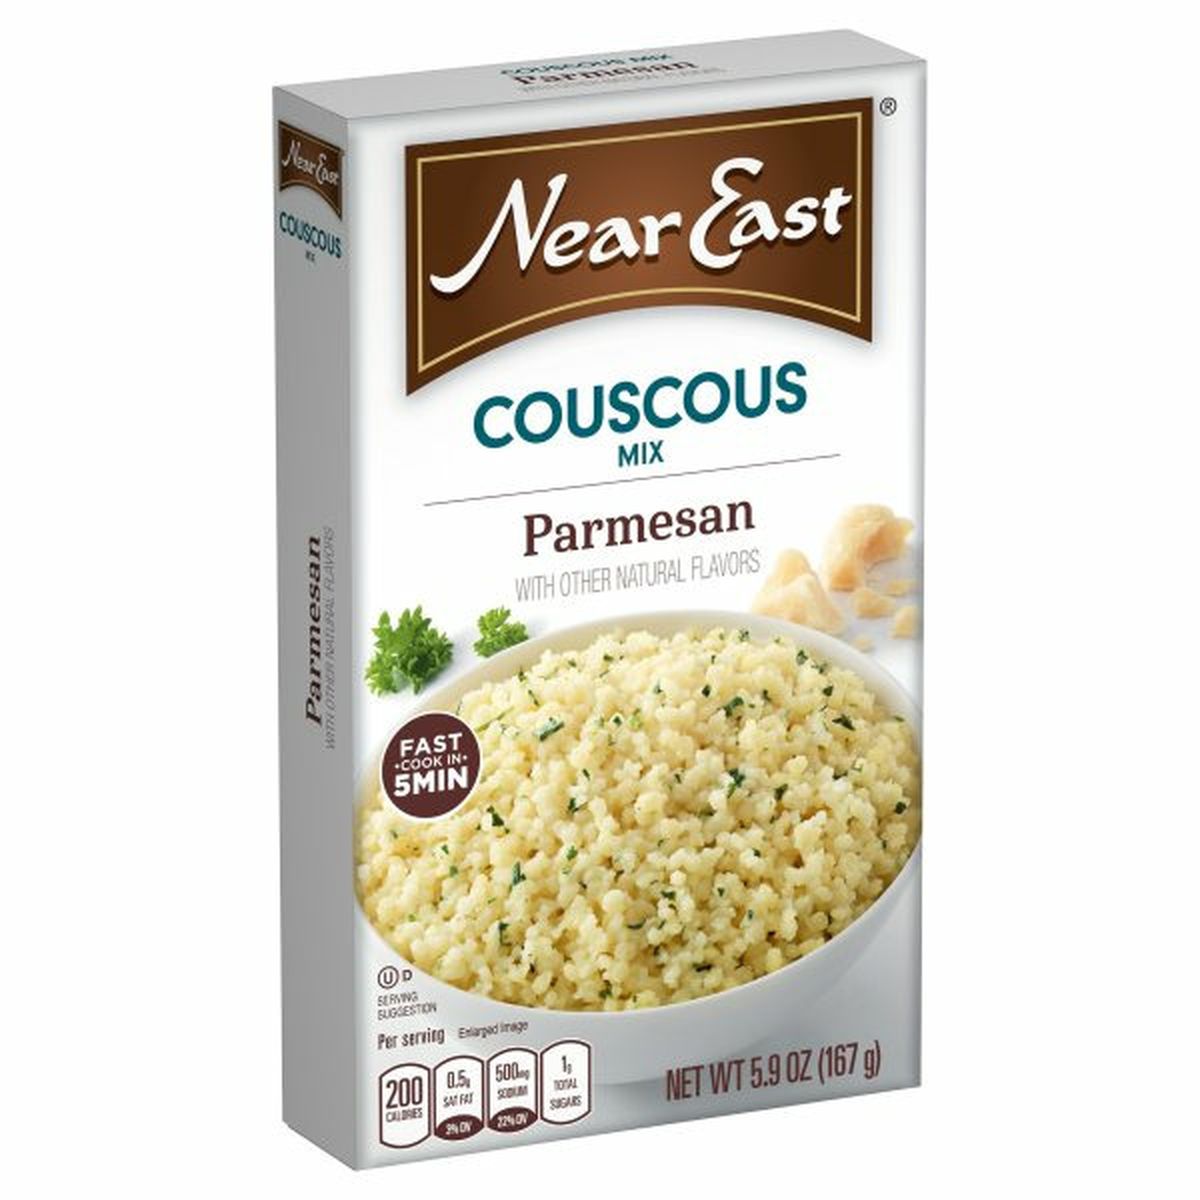 Calories in Near East Couscous Rice Mix, Parmesan